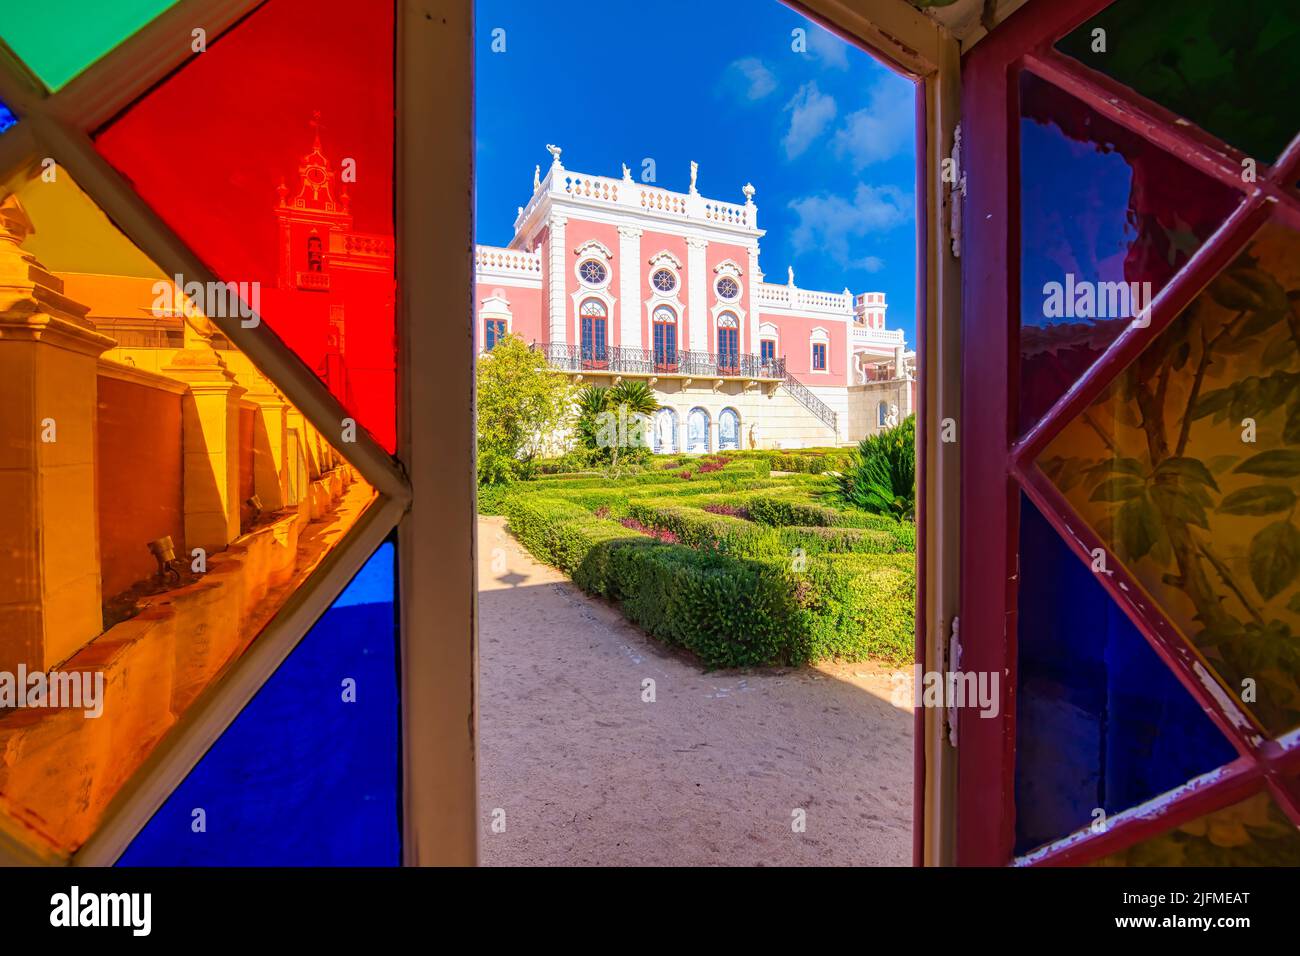 Palacio de Estoi visto a través de la vidriera, Estoi, Loule, el barrio de Faro, Algarve, Portugal Foto de stock